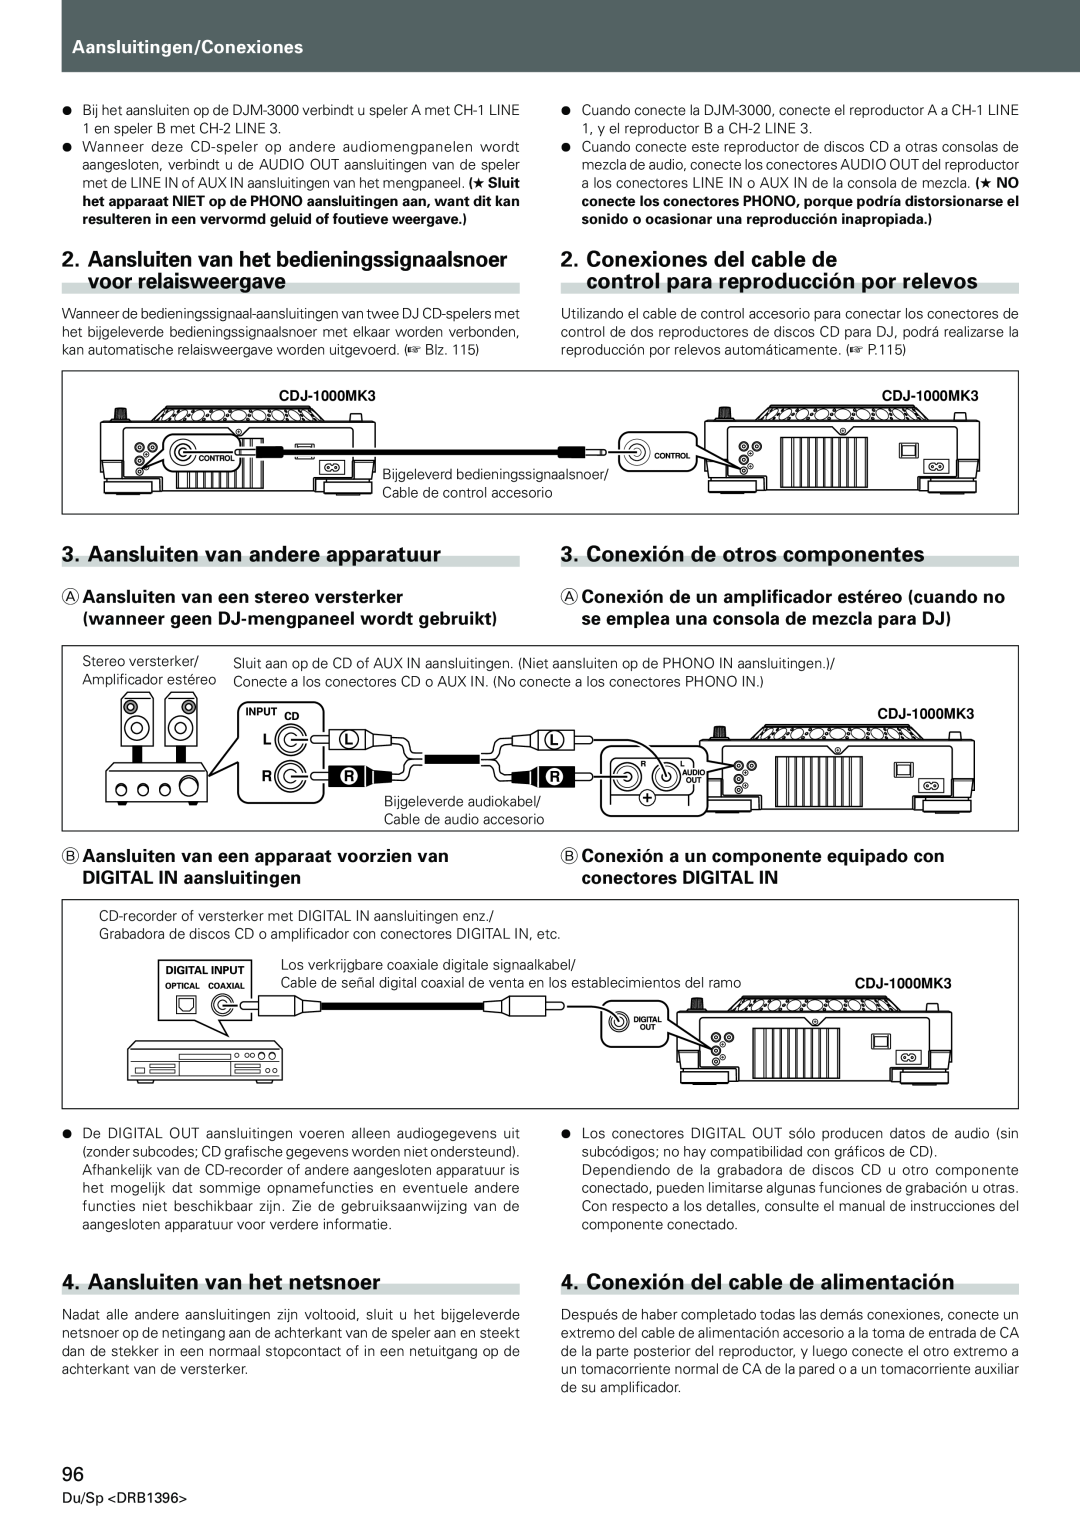 Pioneer CDJ-1000MK3 manual Conexiones del cable de, control para reproducción por relevos, Aansluiten van andere apparatuur 